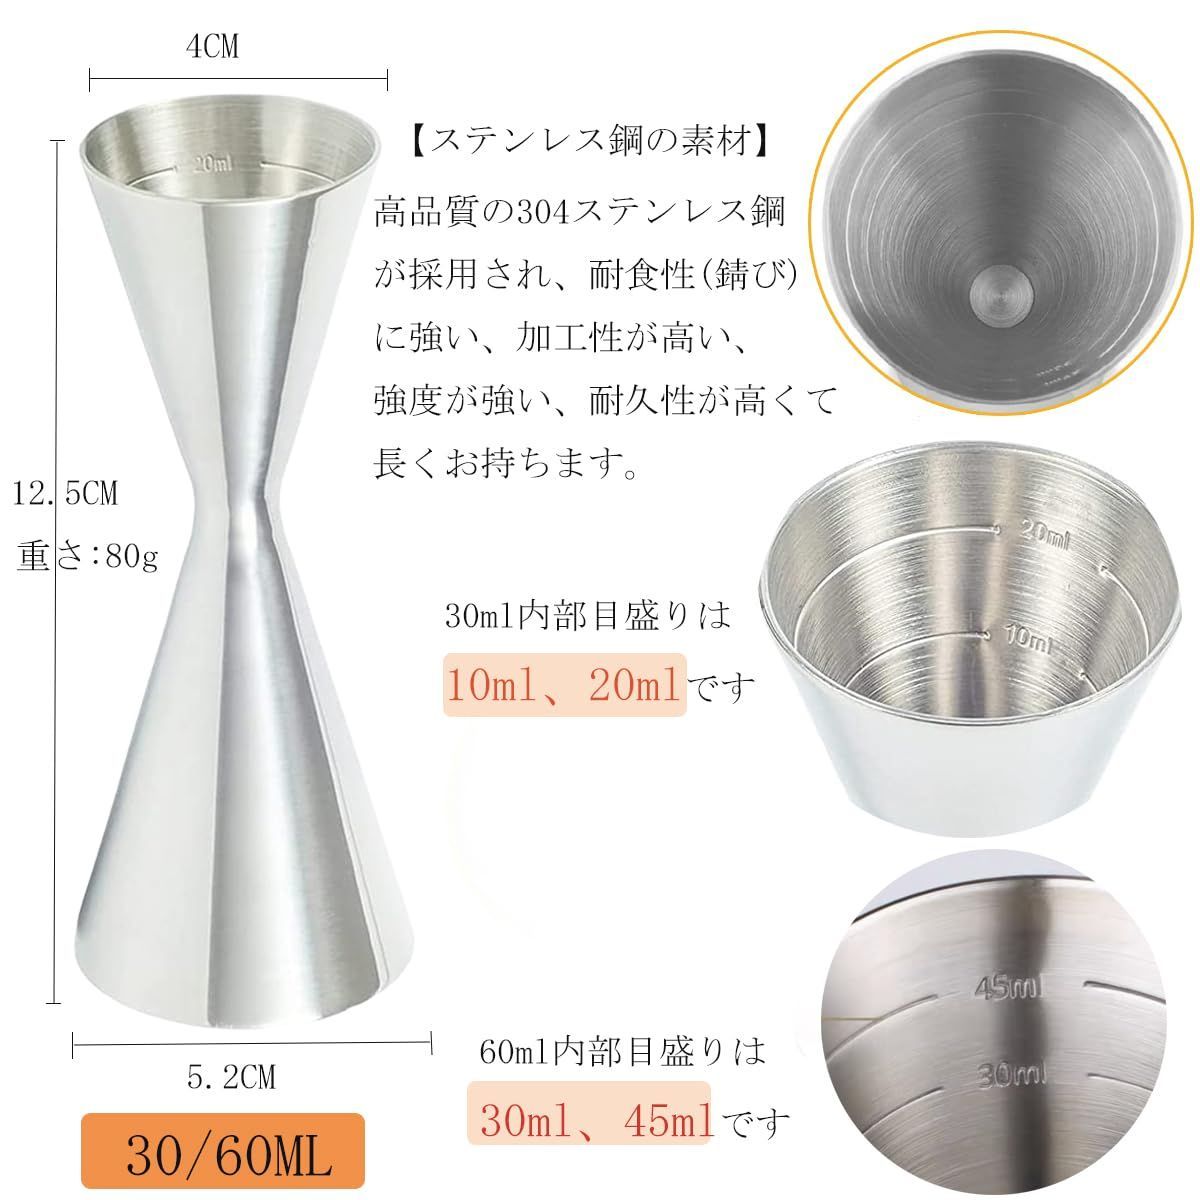 新着商品Yoseka 30ml/60mlジガーカップ 目盛り付き メジャーカップ ダブルヘッド 小頭102030mlスケール  大頭304560mlスケール 一体型ステンレス鋼 バー用品